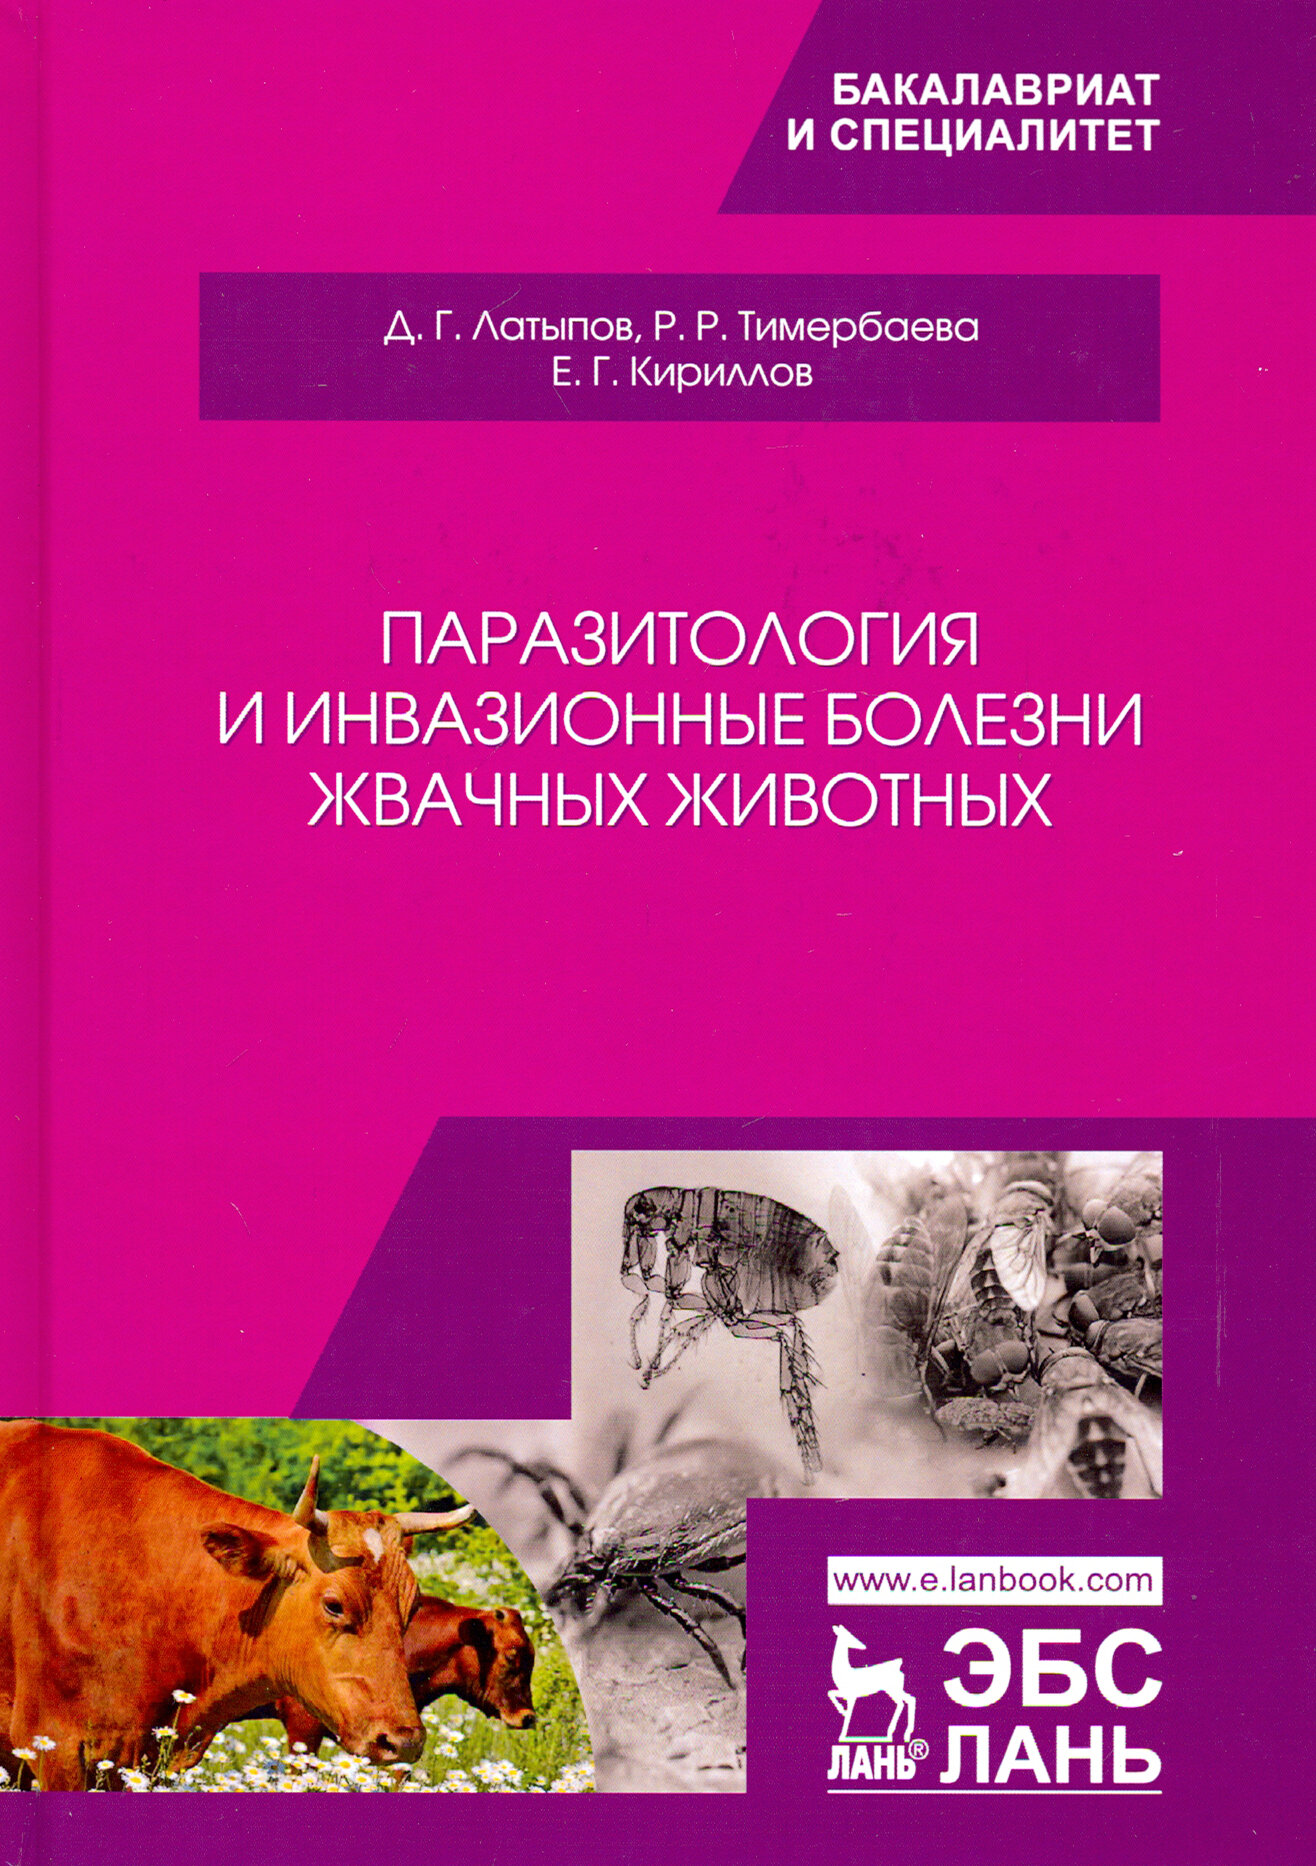 Паразитология и инвазионные болезни жвачных животных - фото №3